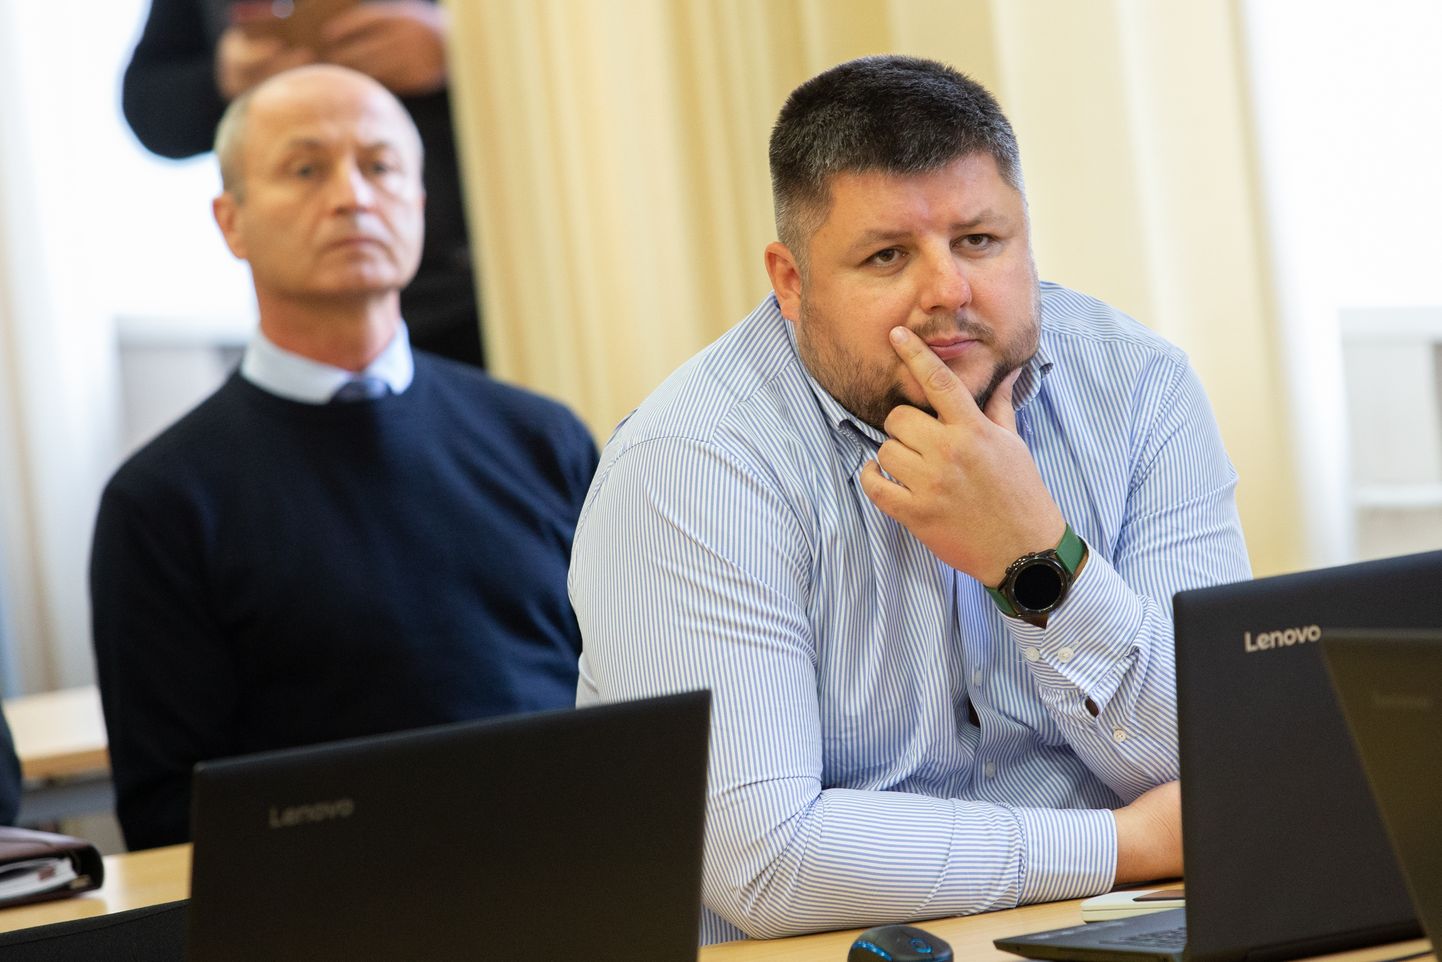 Член правления "OSK Grupp" Денис Вершинин утверждал в ревизионной комиссии горсобрания, что сотрудничество между предприятием и горуправлением затруднено.